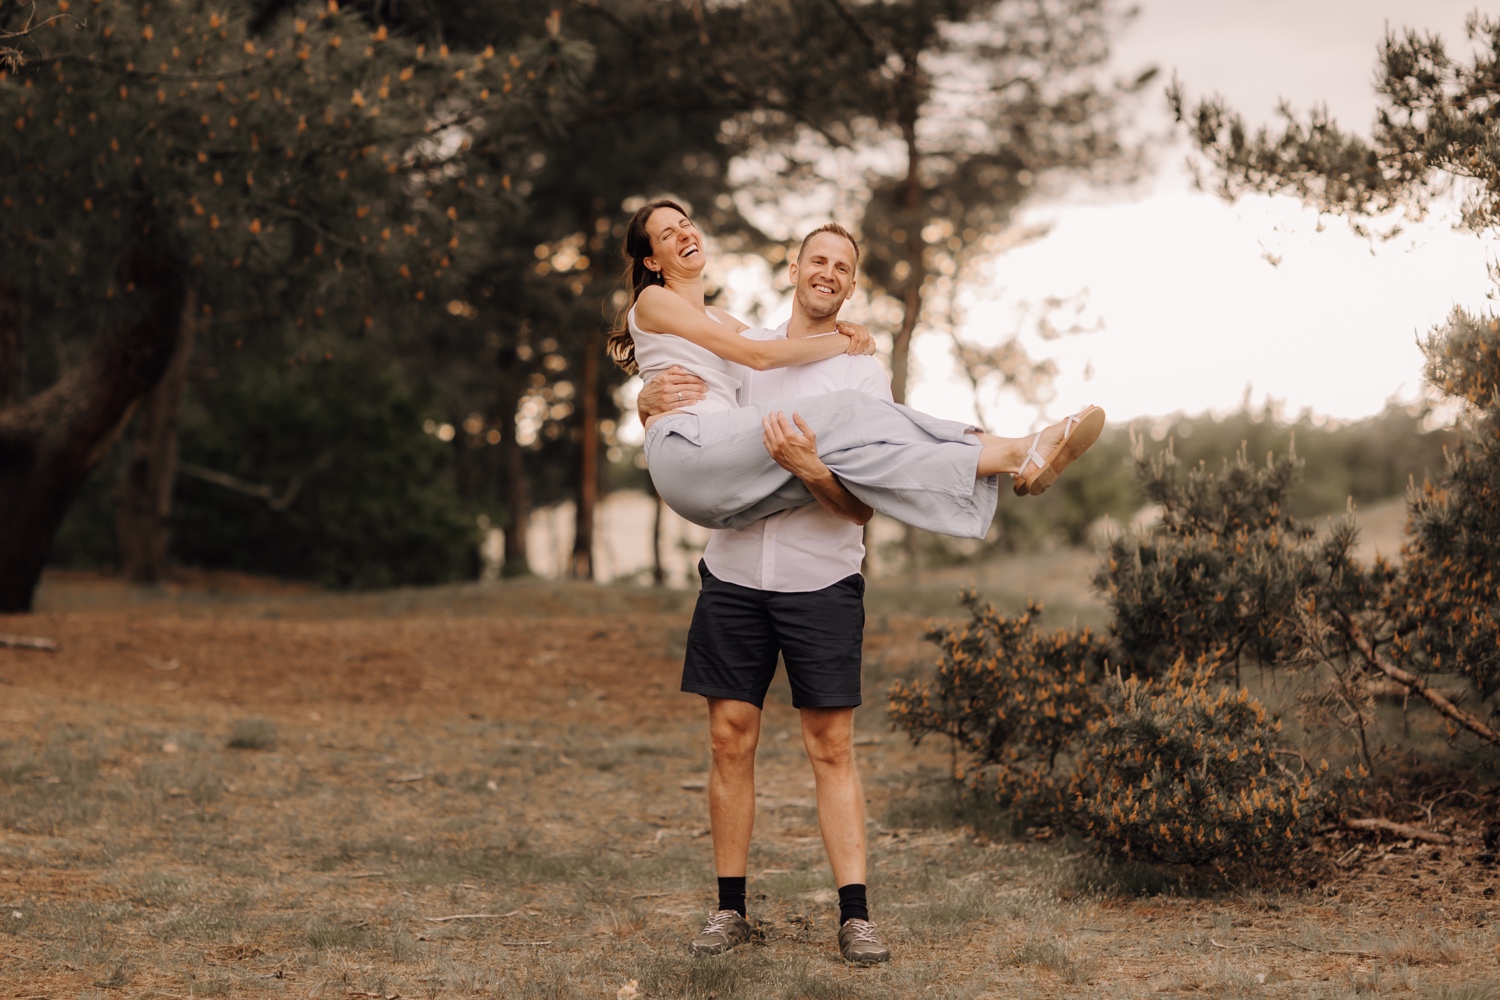 gezinsfotograaf Limburg - broer heft zus in de lucht voor ludieke foto